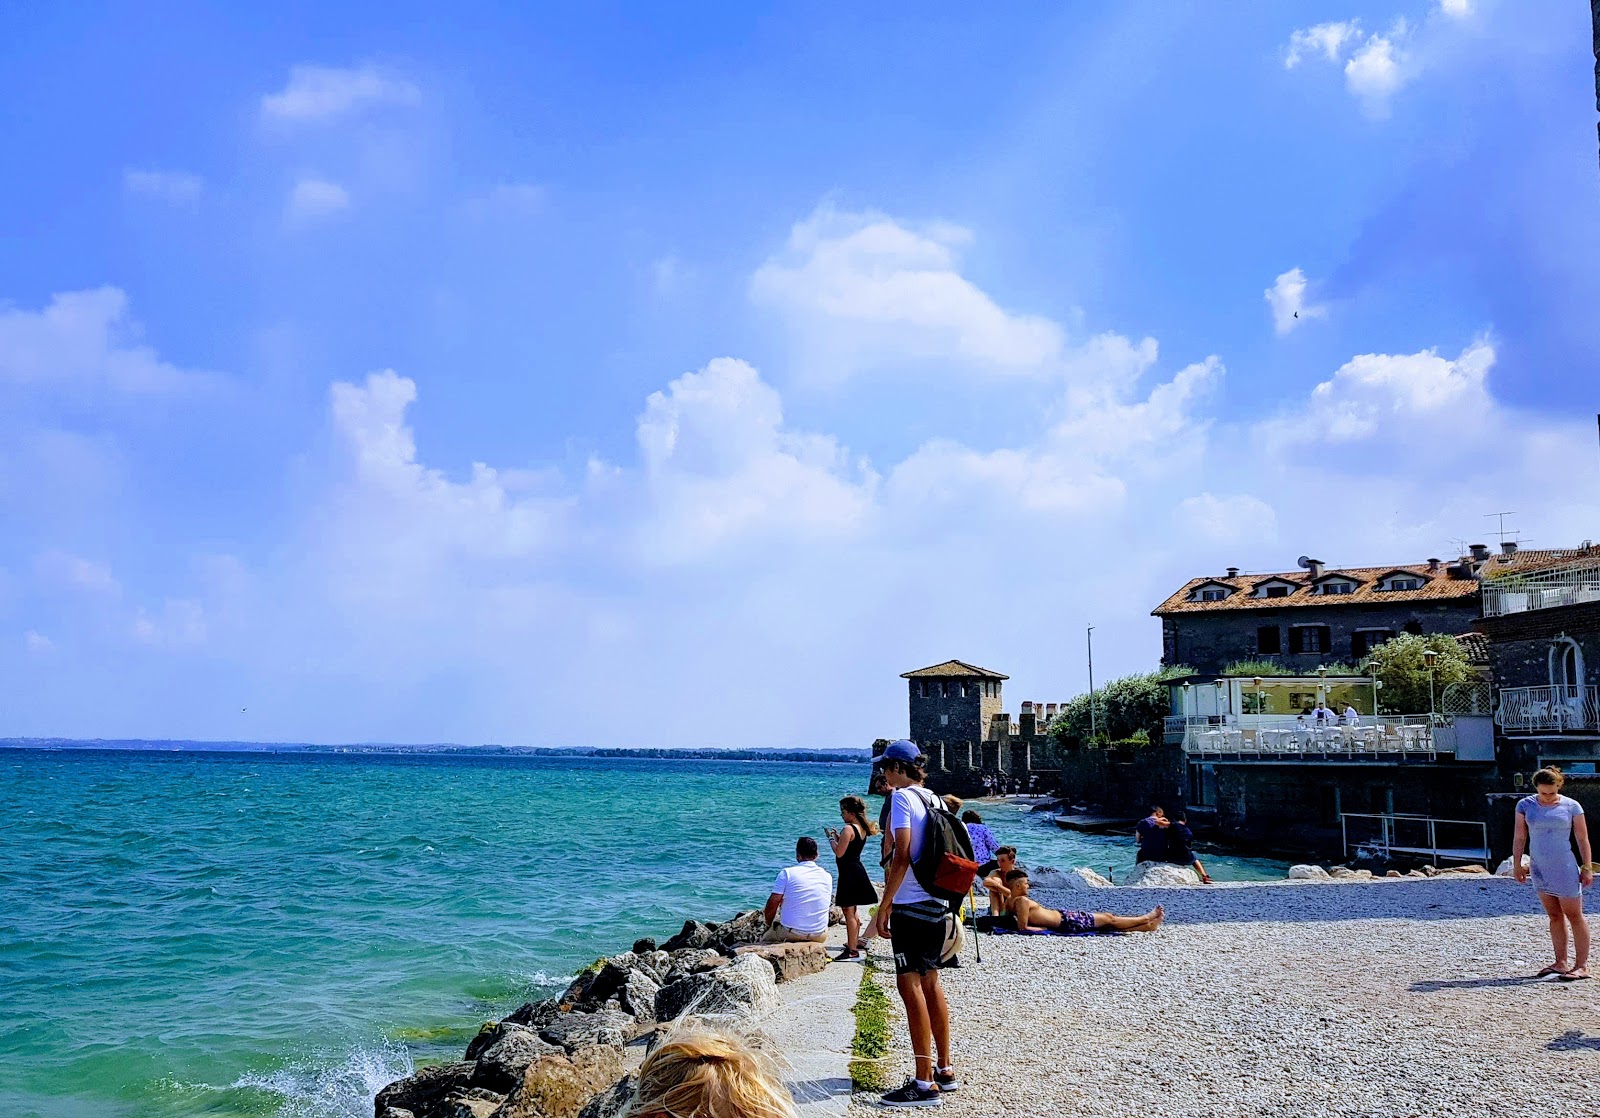 Photo of Spiaggia del Prete and the settlement